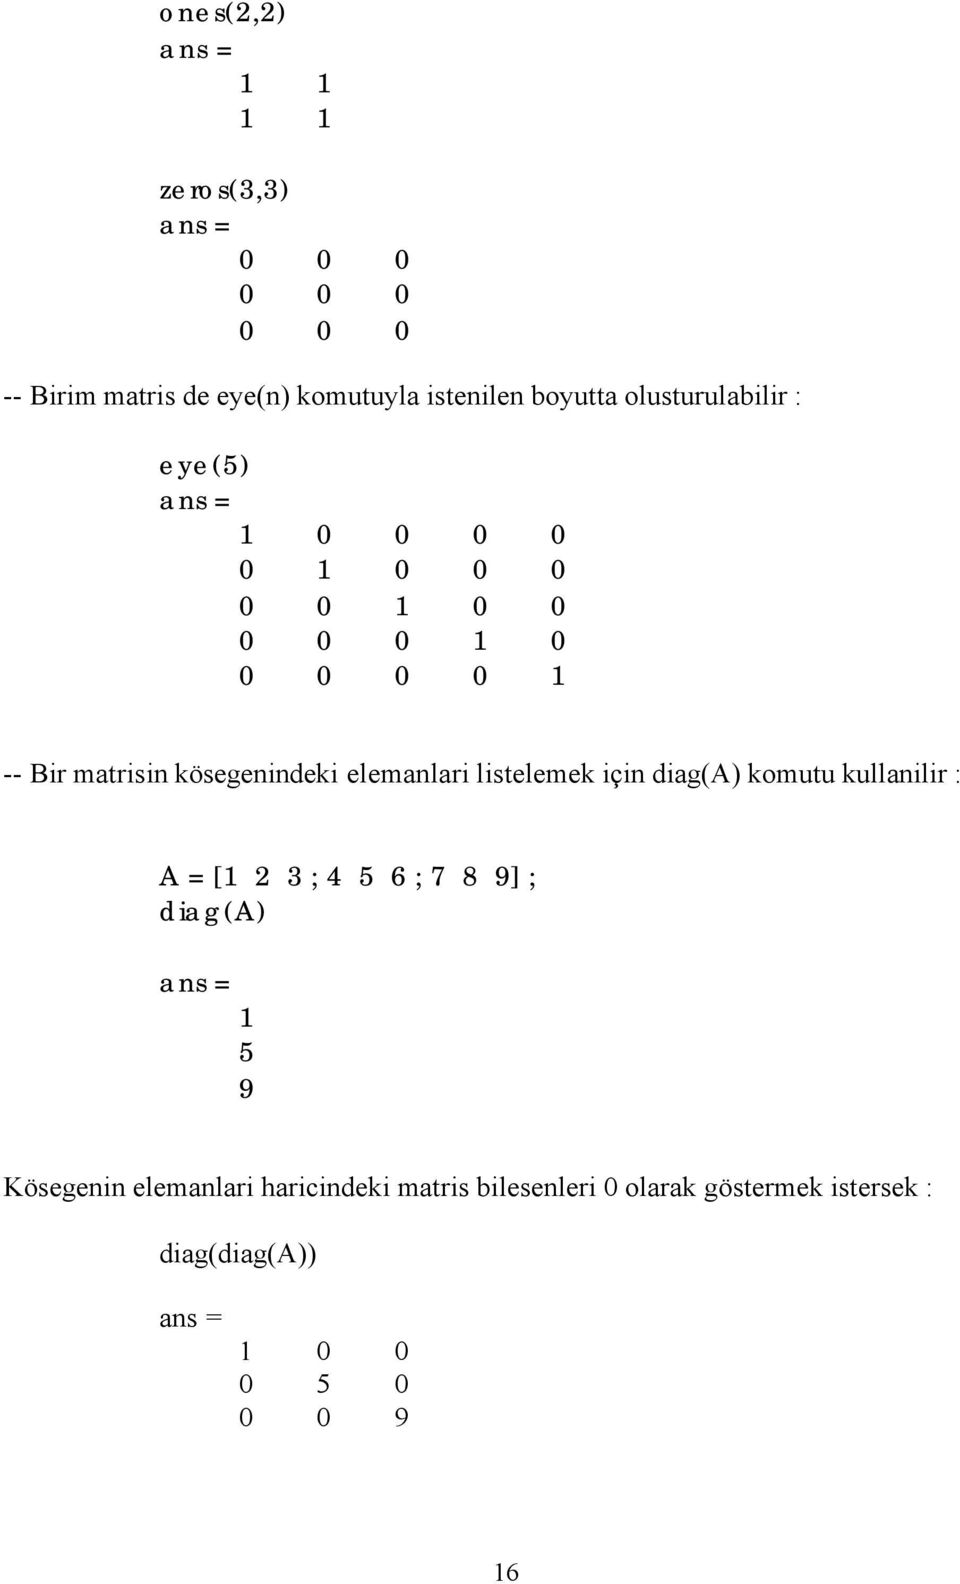 elemanlari listelemek için diag(a) komutu kullanilir : A = [1 2 3 ; 4 5 6 ; 7 8 9] ; diag(a) ans = 1 5 9